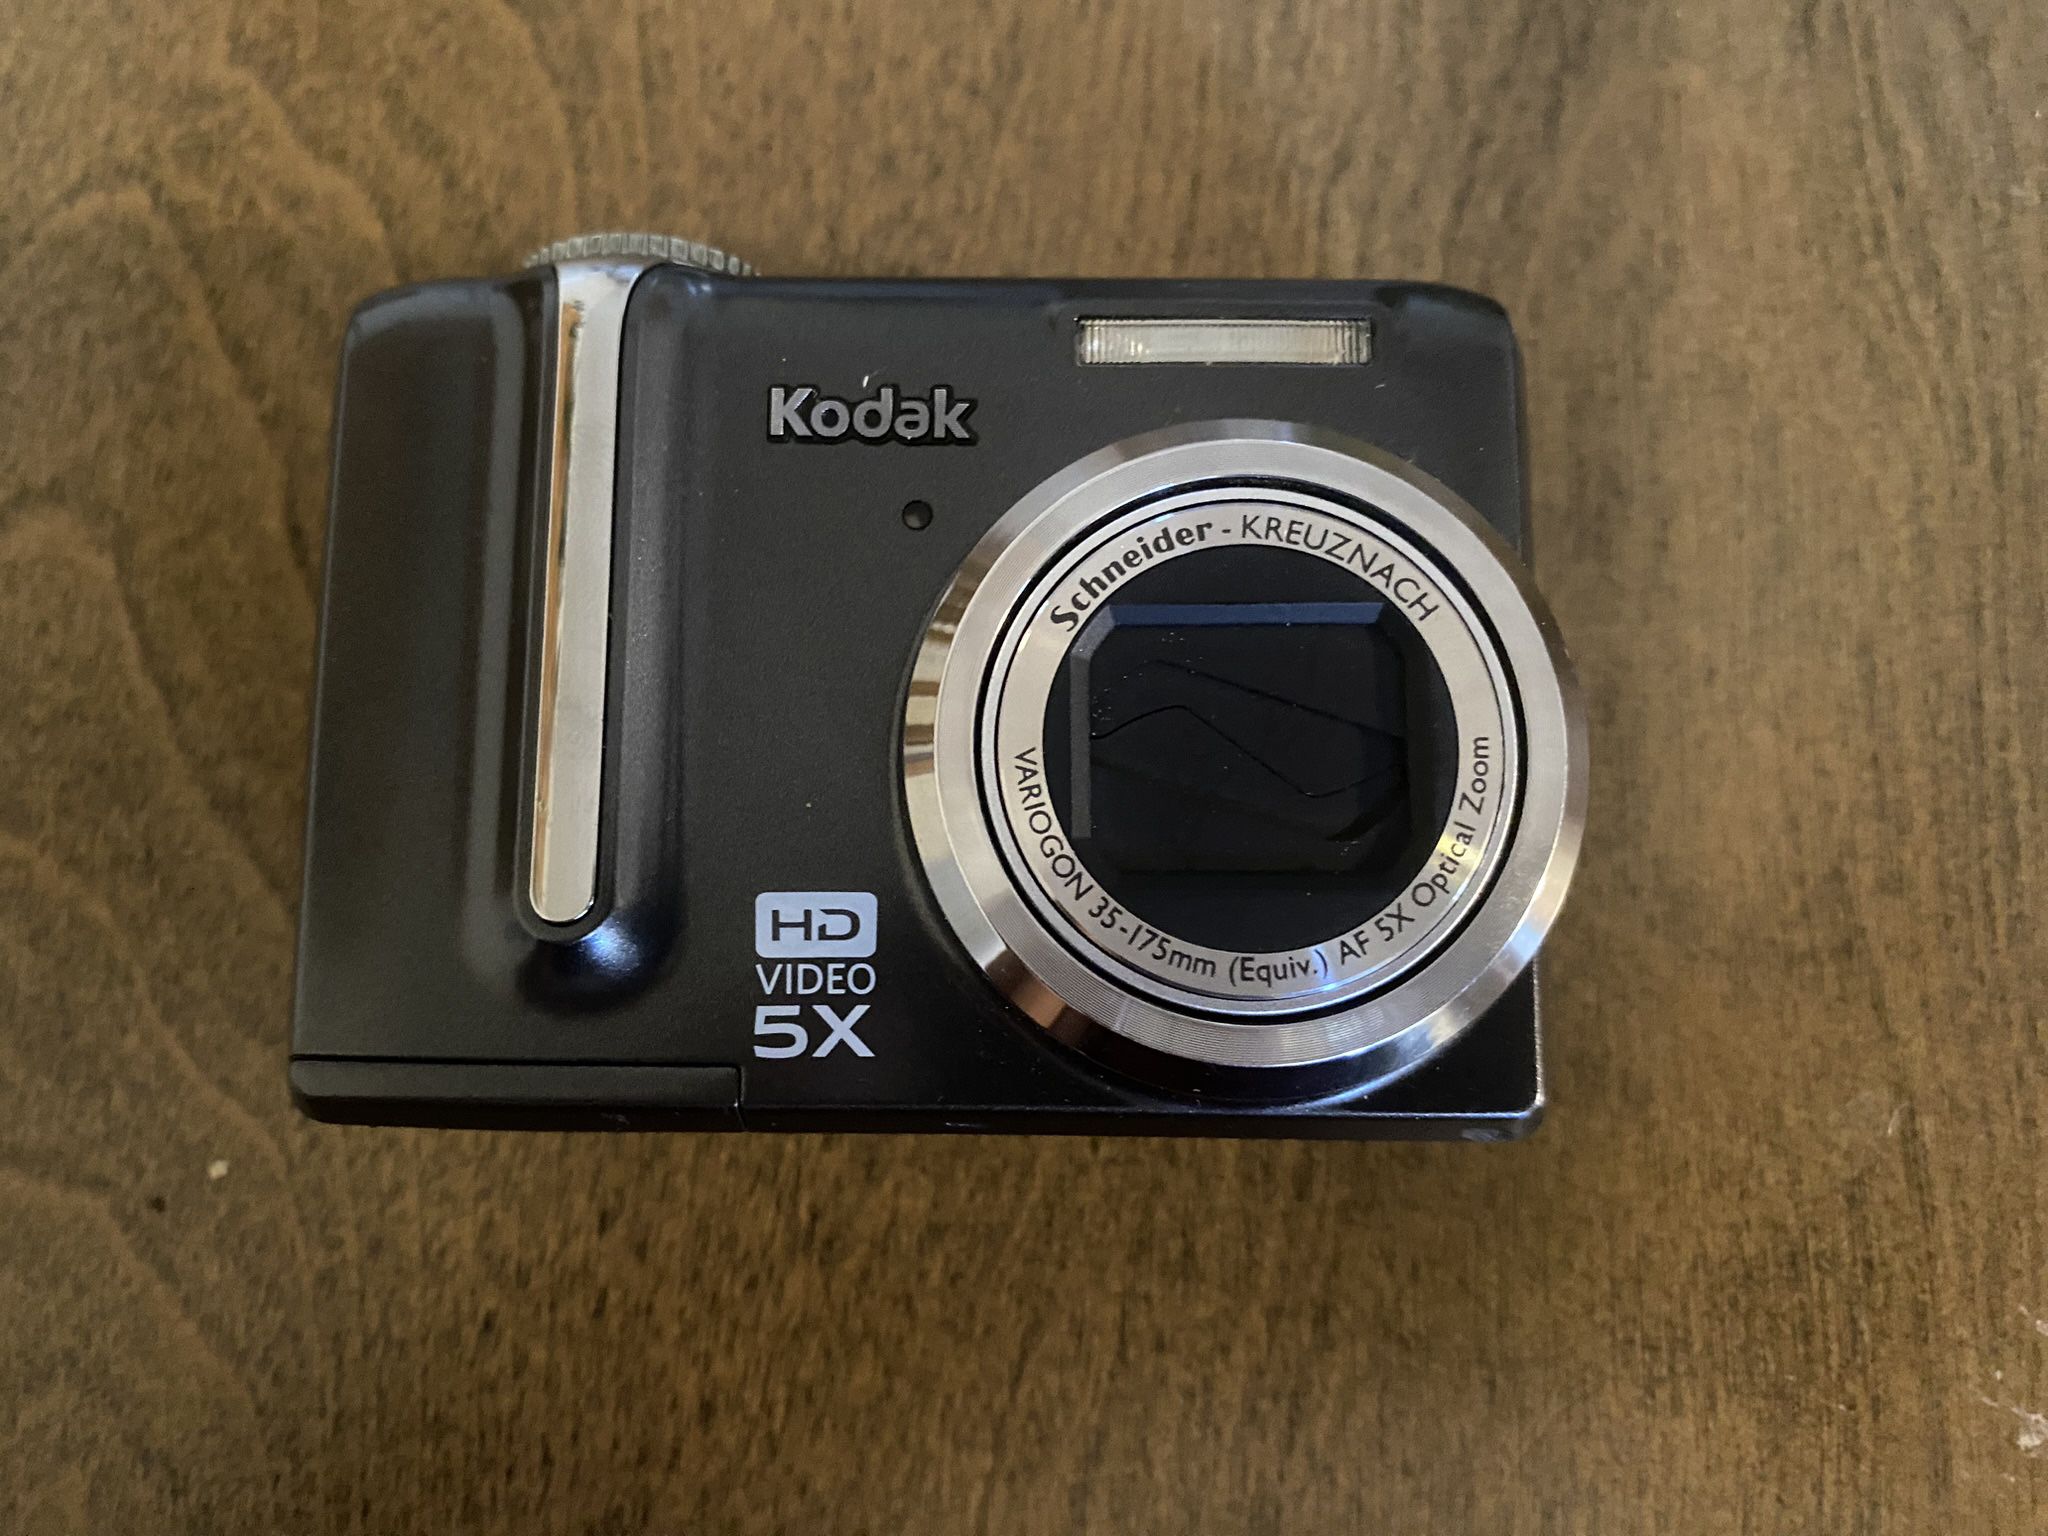 Kodak Camara